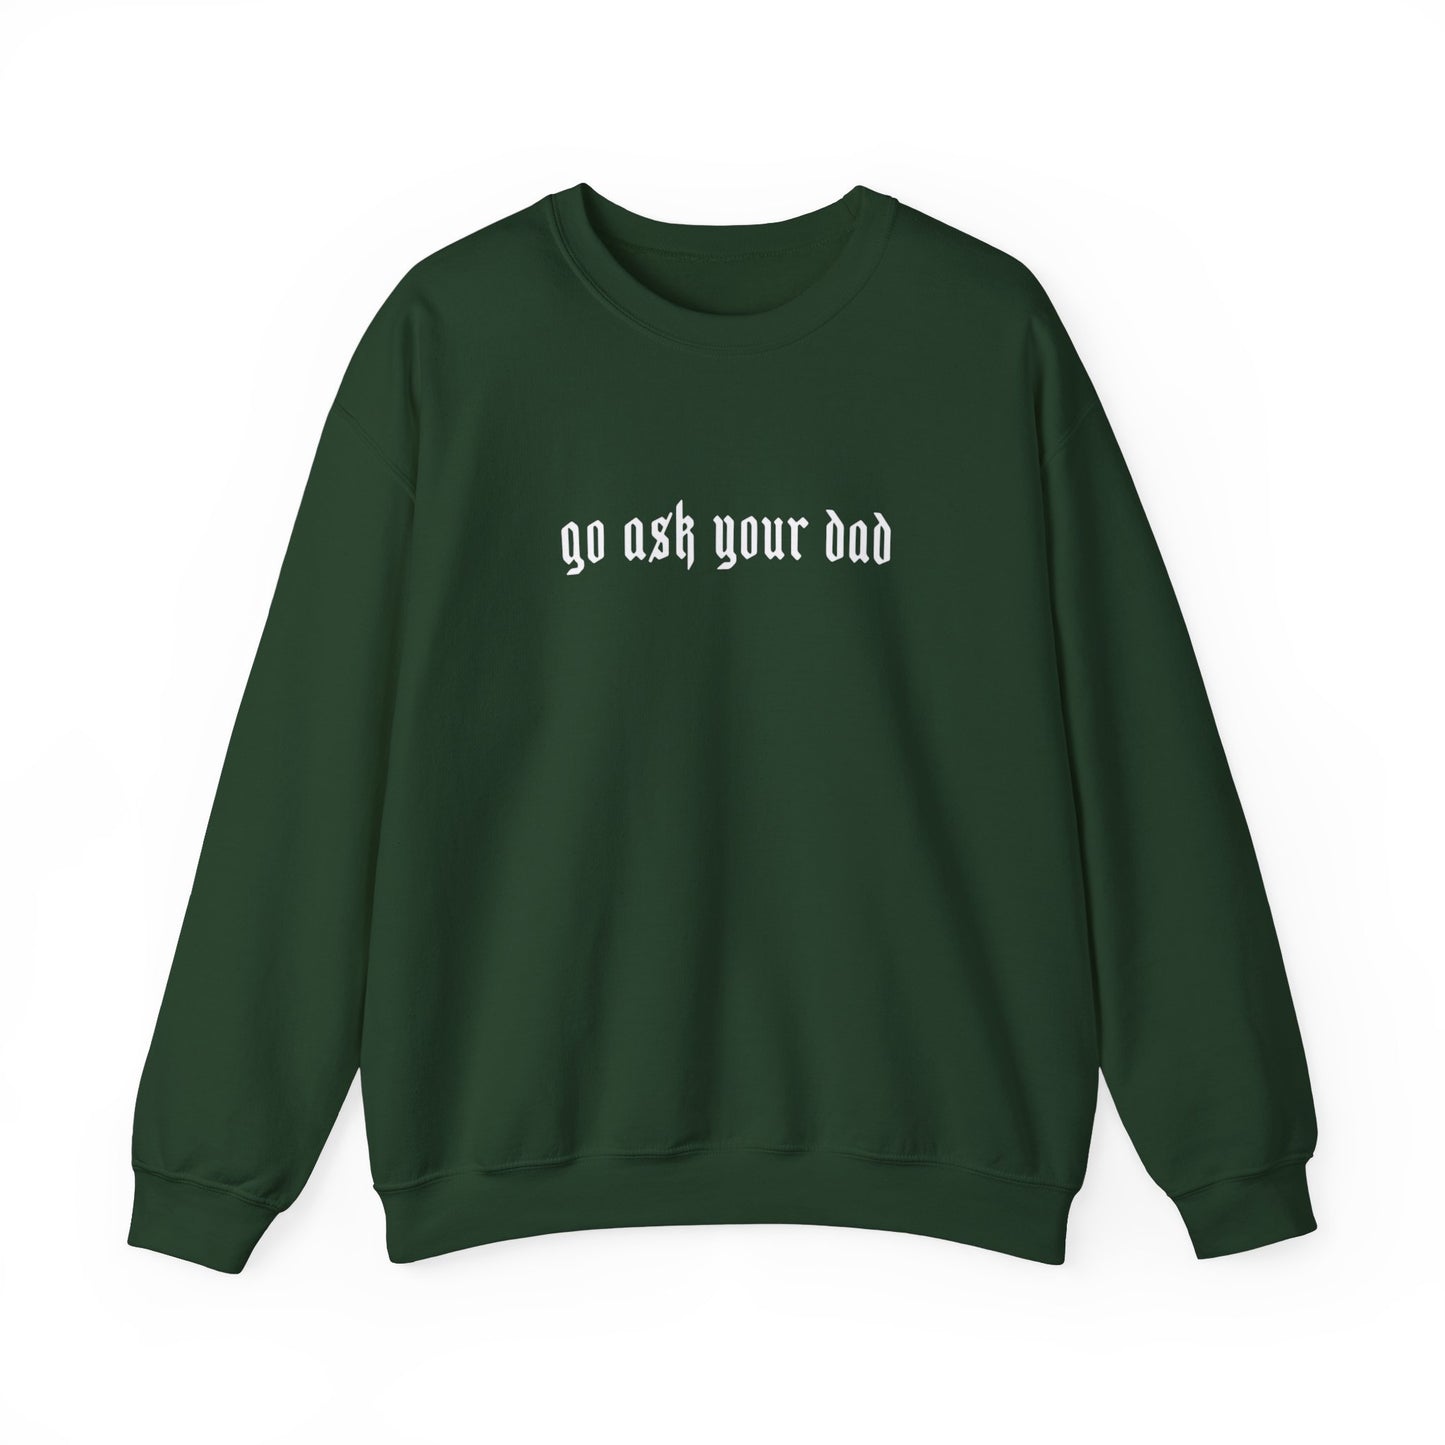 Go Ask your dad Crewneck sweatshirt